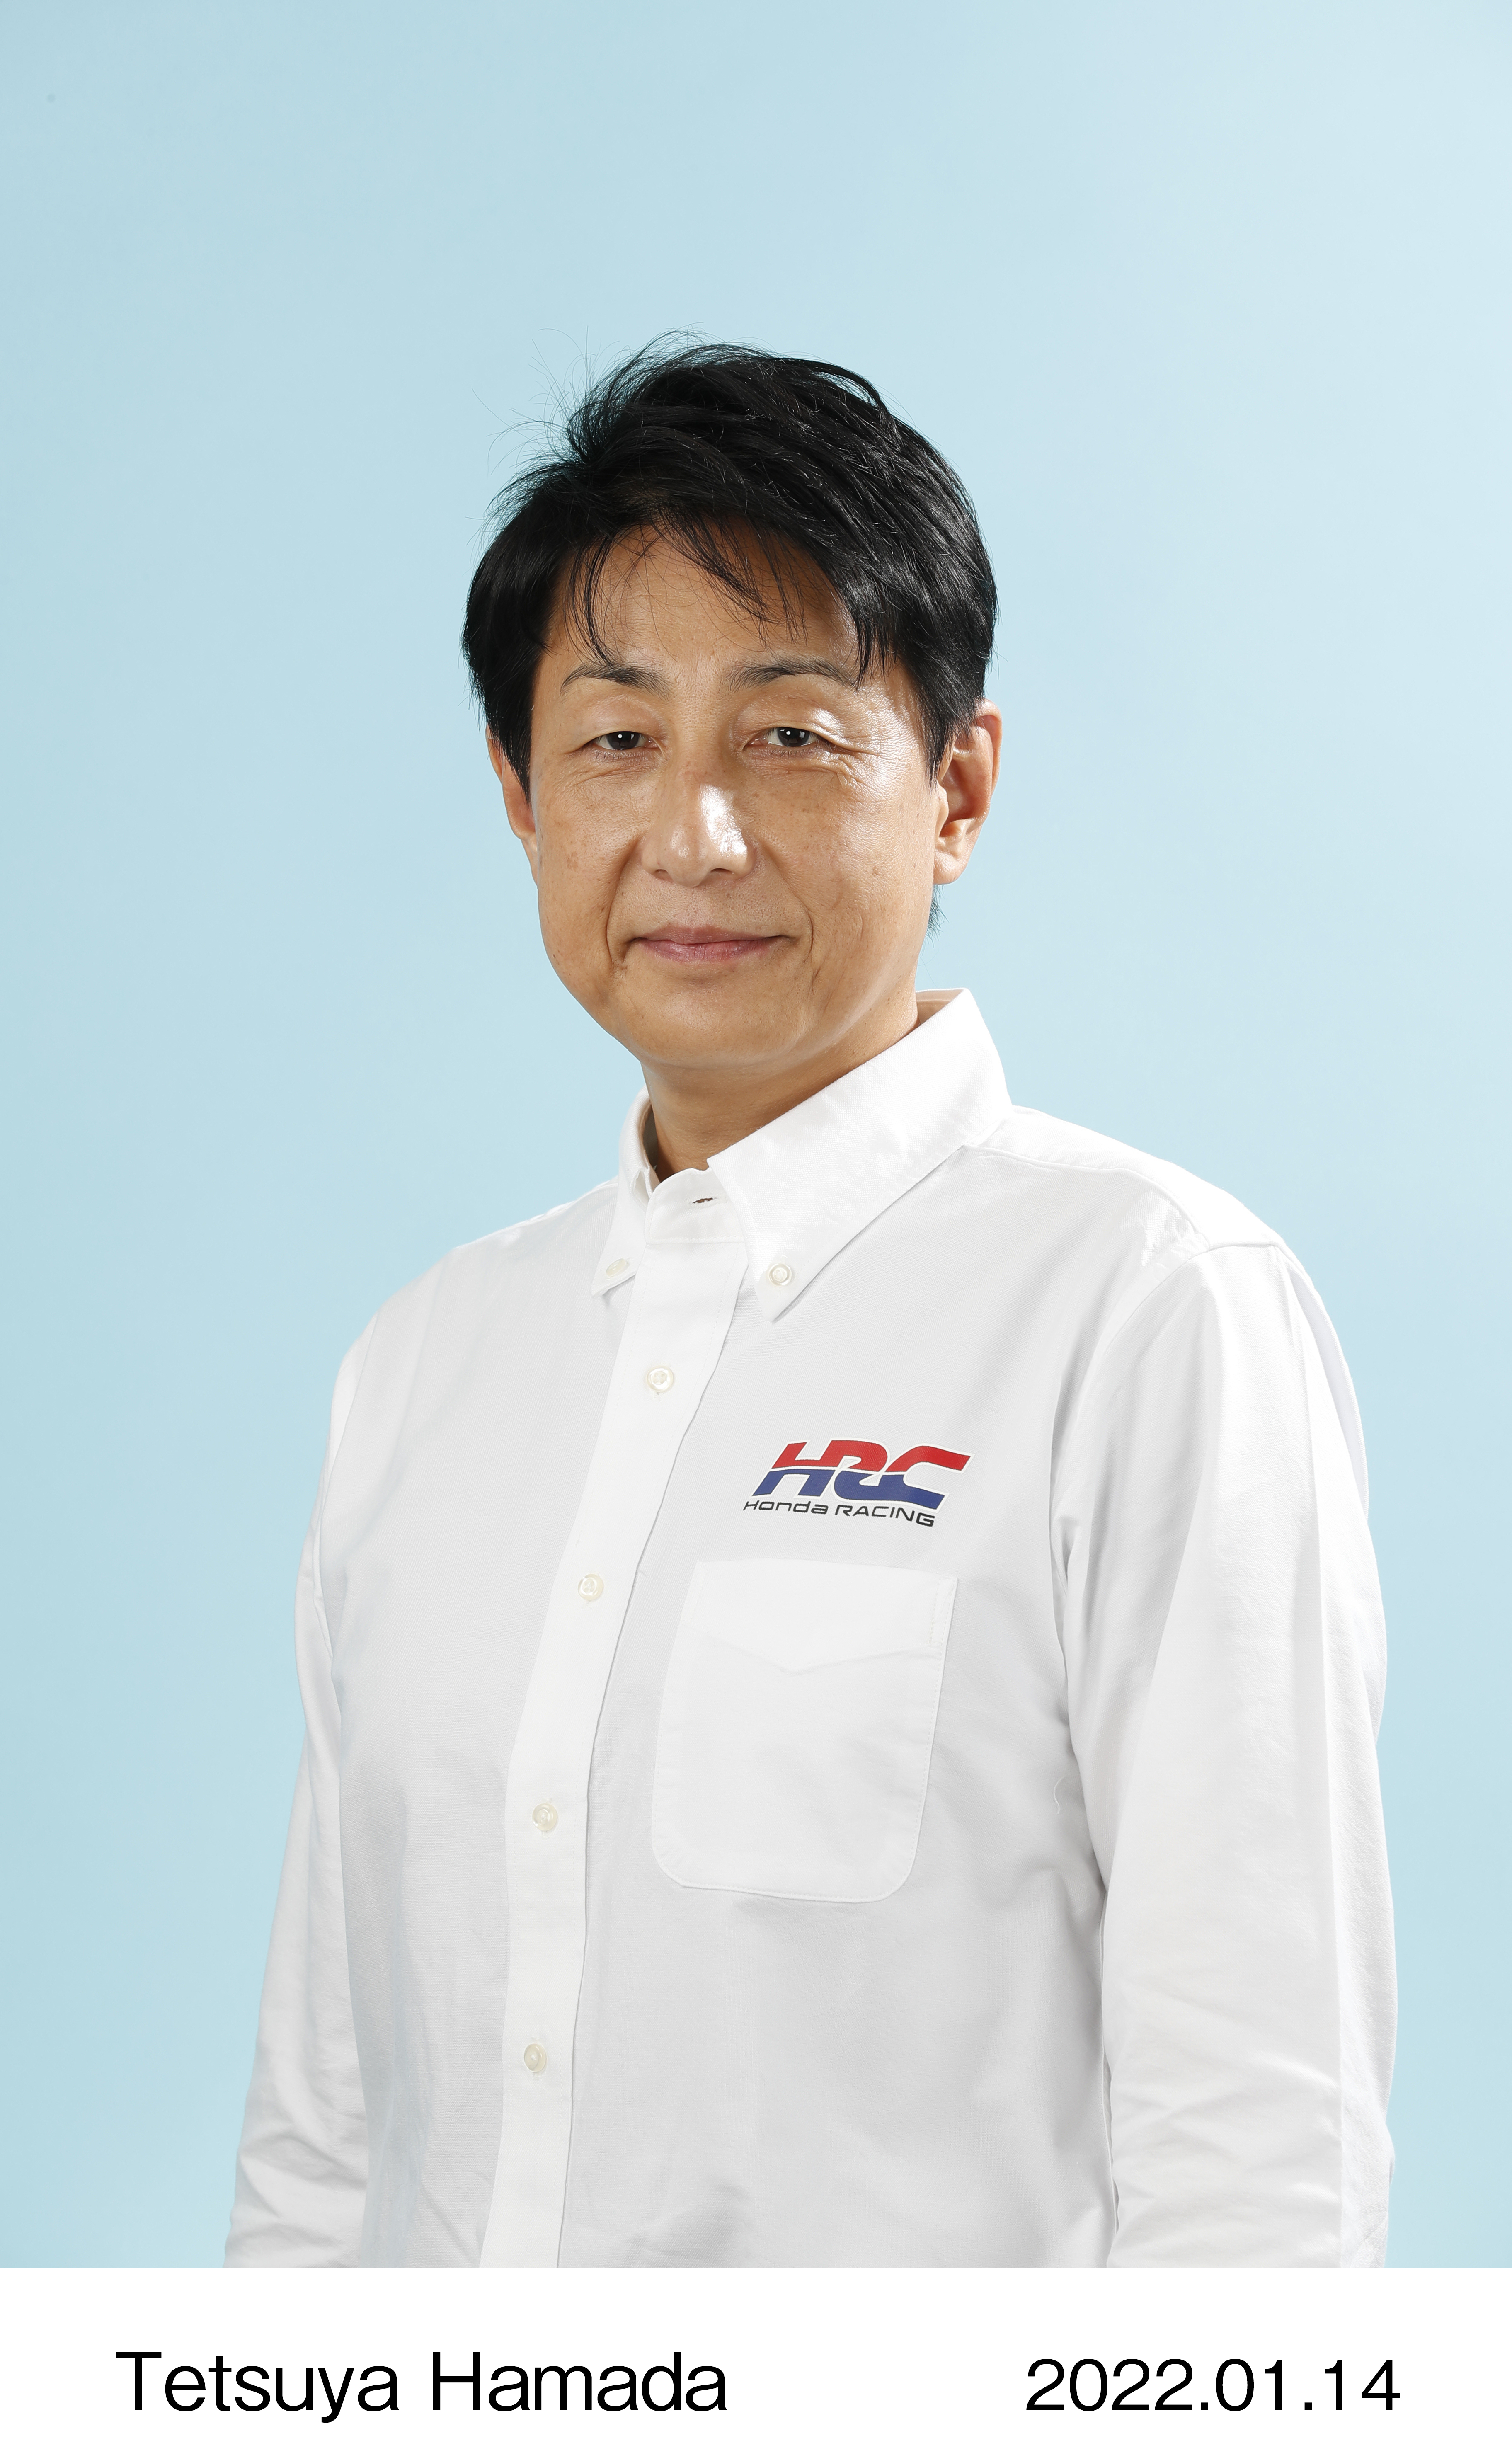 Tetsuya Hamada